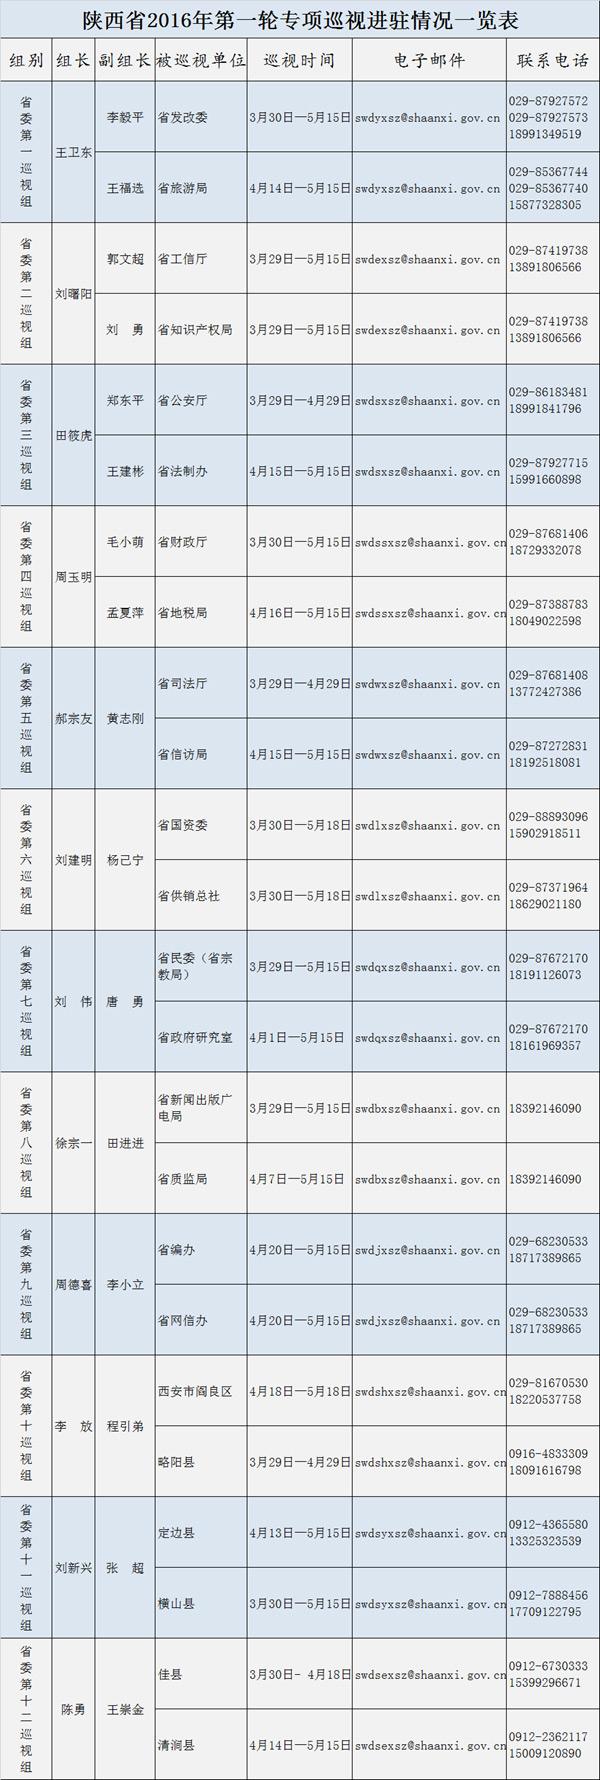 陕西:省委12个巡视组全部进驻 公布邮箱电话